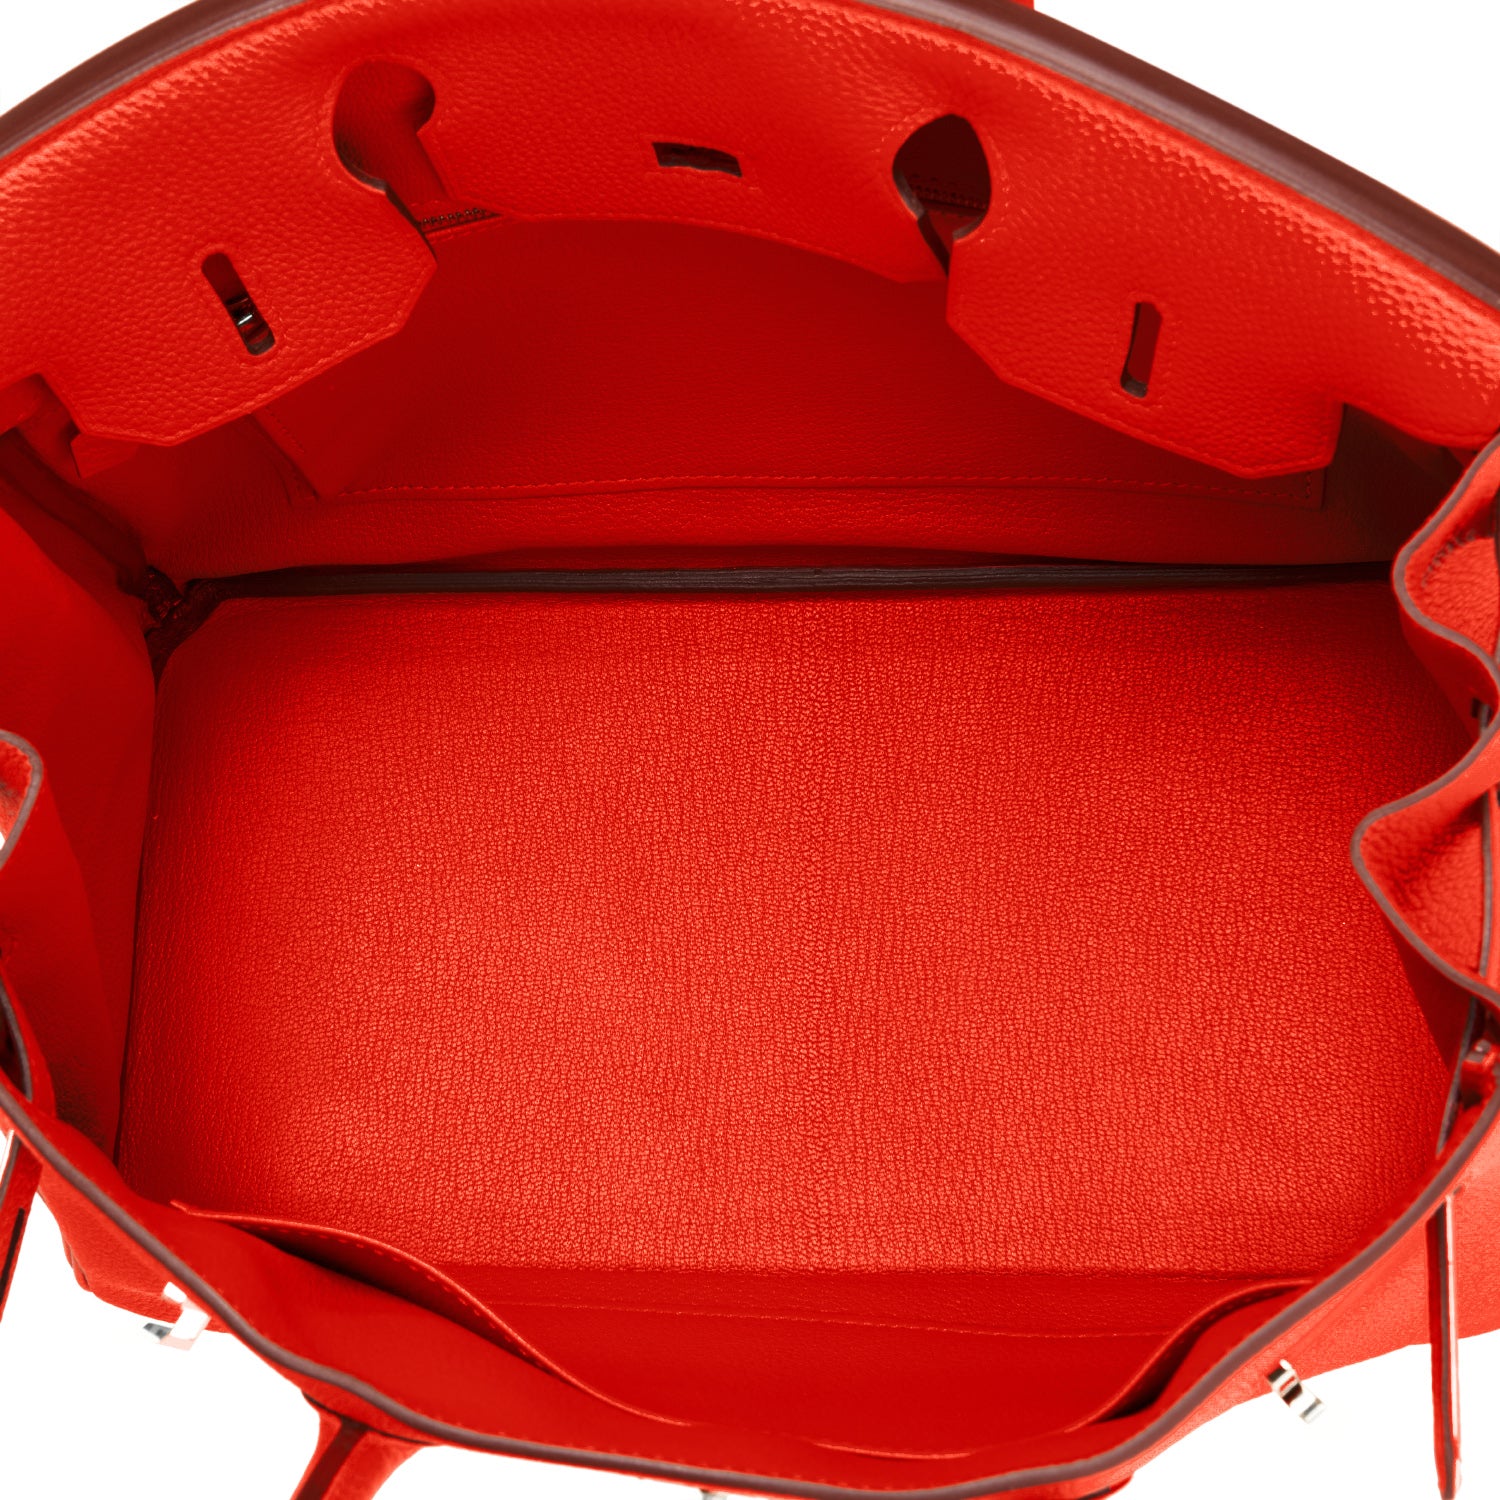 Hermes Birkin Bag 35cm Capucine Red-Orange Togo Gold Hardware